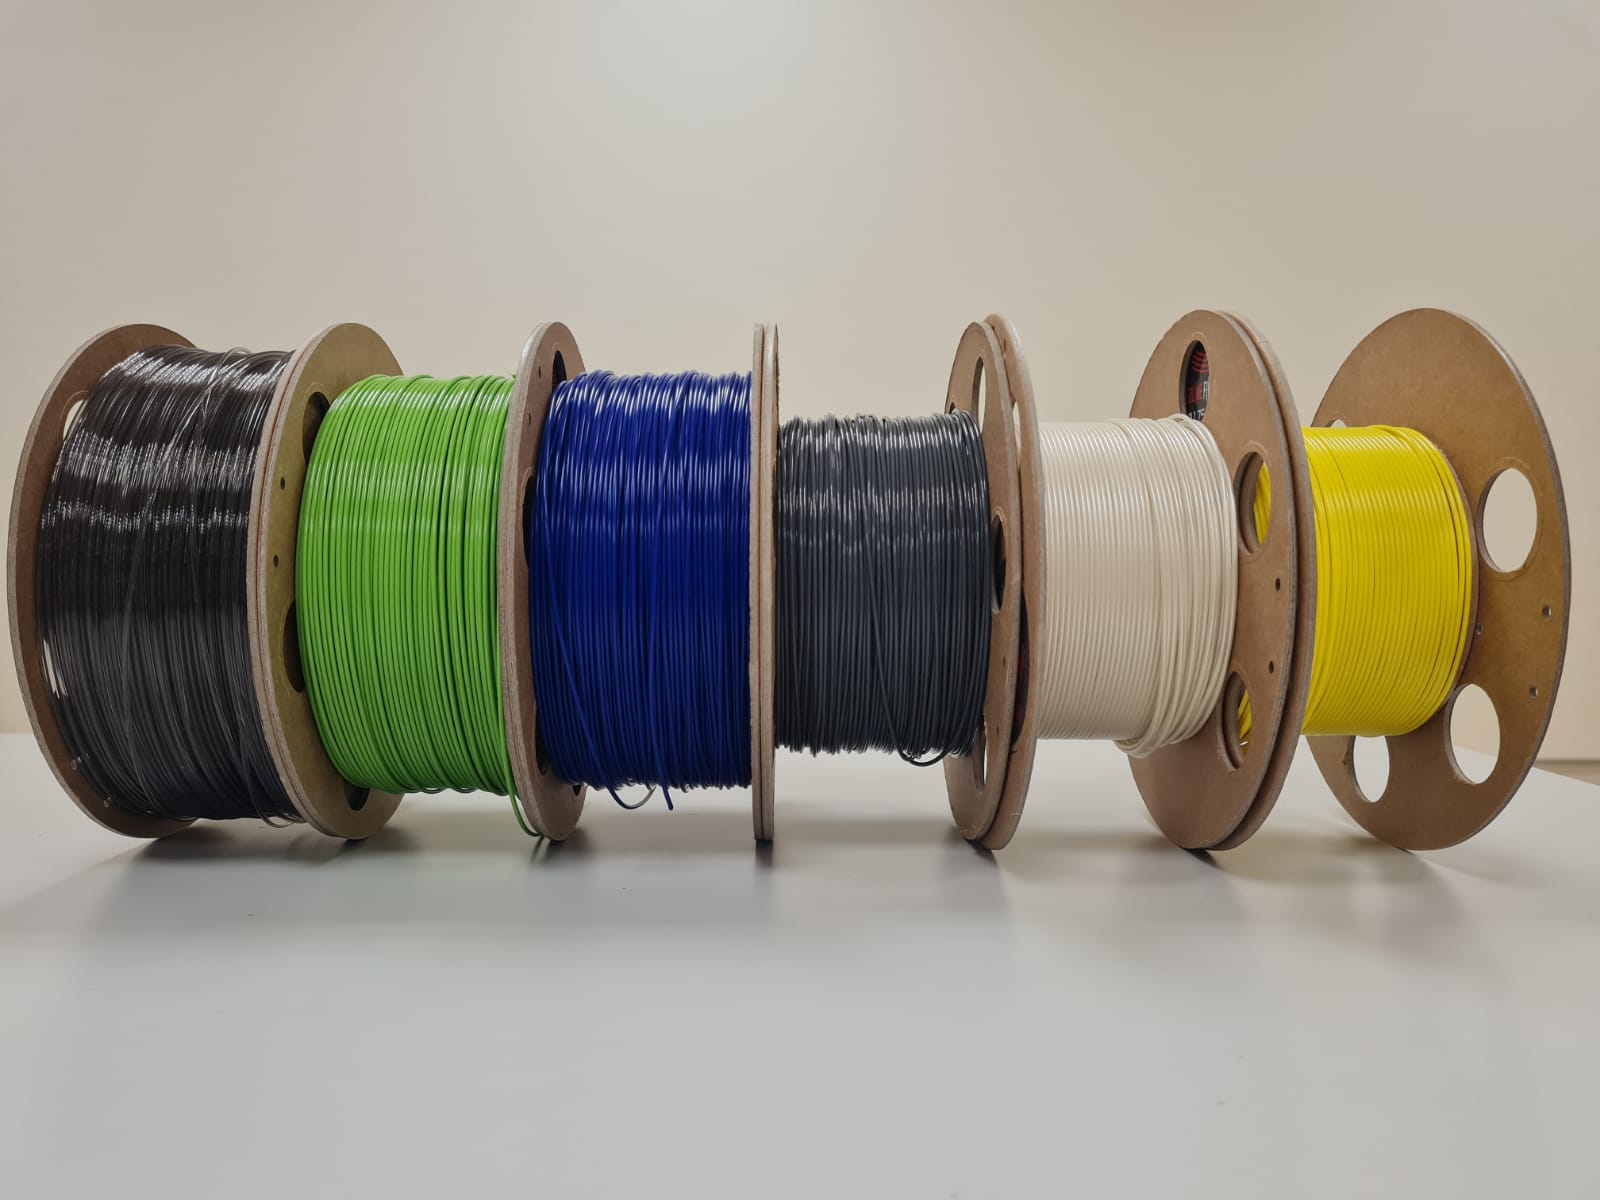 6 Filament Rollen mit verschiedenen Farben 3D-Druckfilament: schwarz, grün, blau, grau, weiß und gelb. Sie sind dicht nebeneinander auf einem weißen Tisch vor einem weißen Hintergrund platziert.